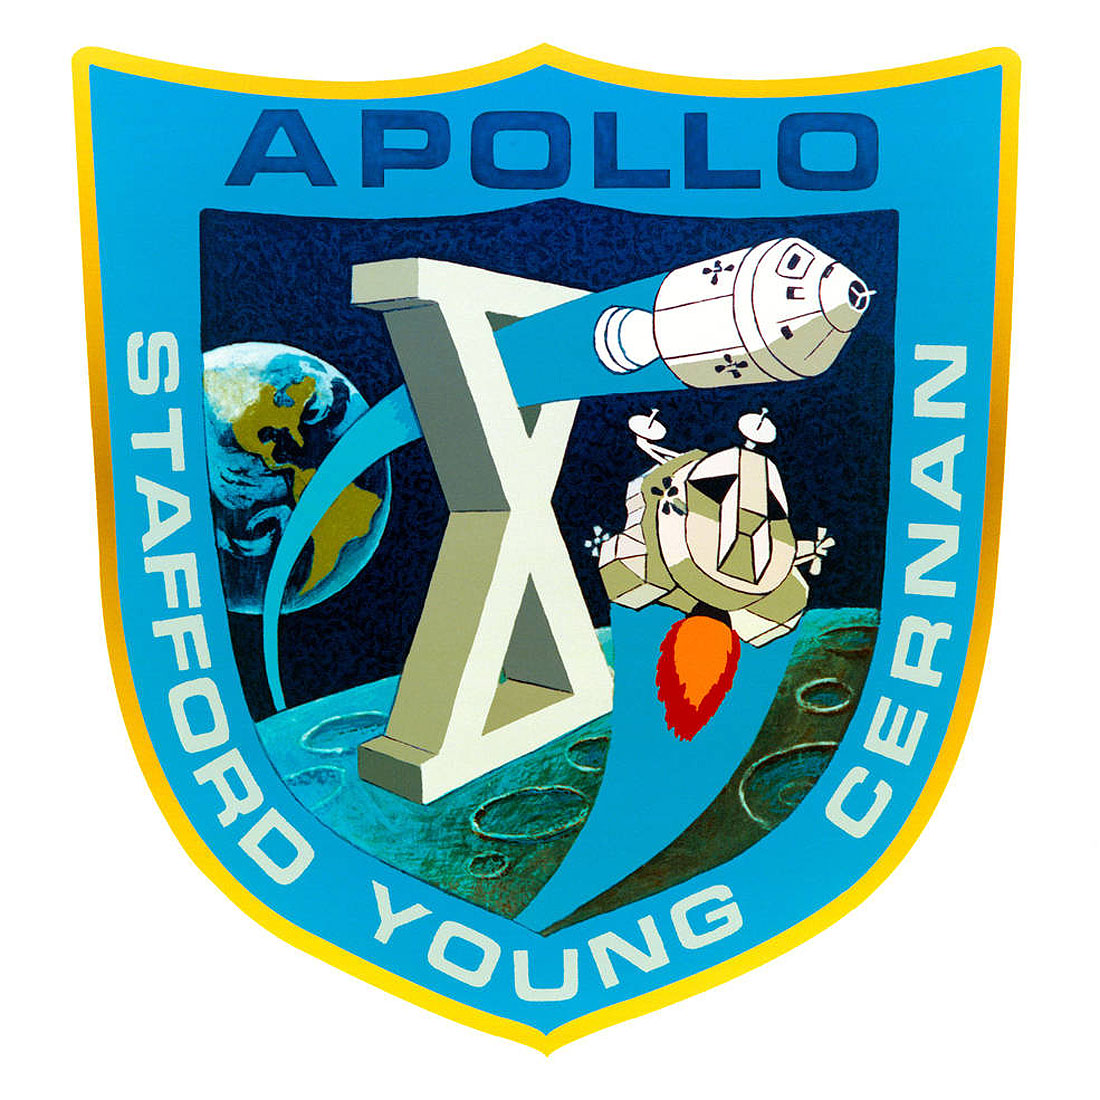 Apollo 10 crew patch